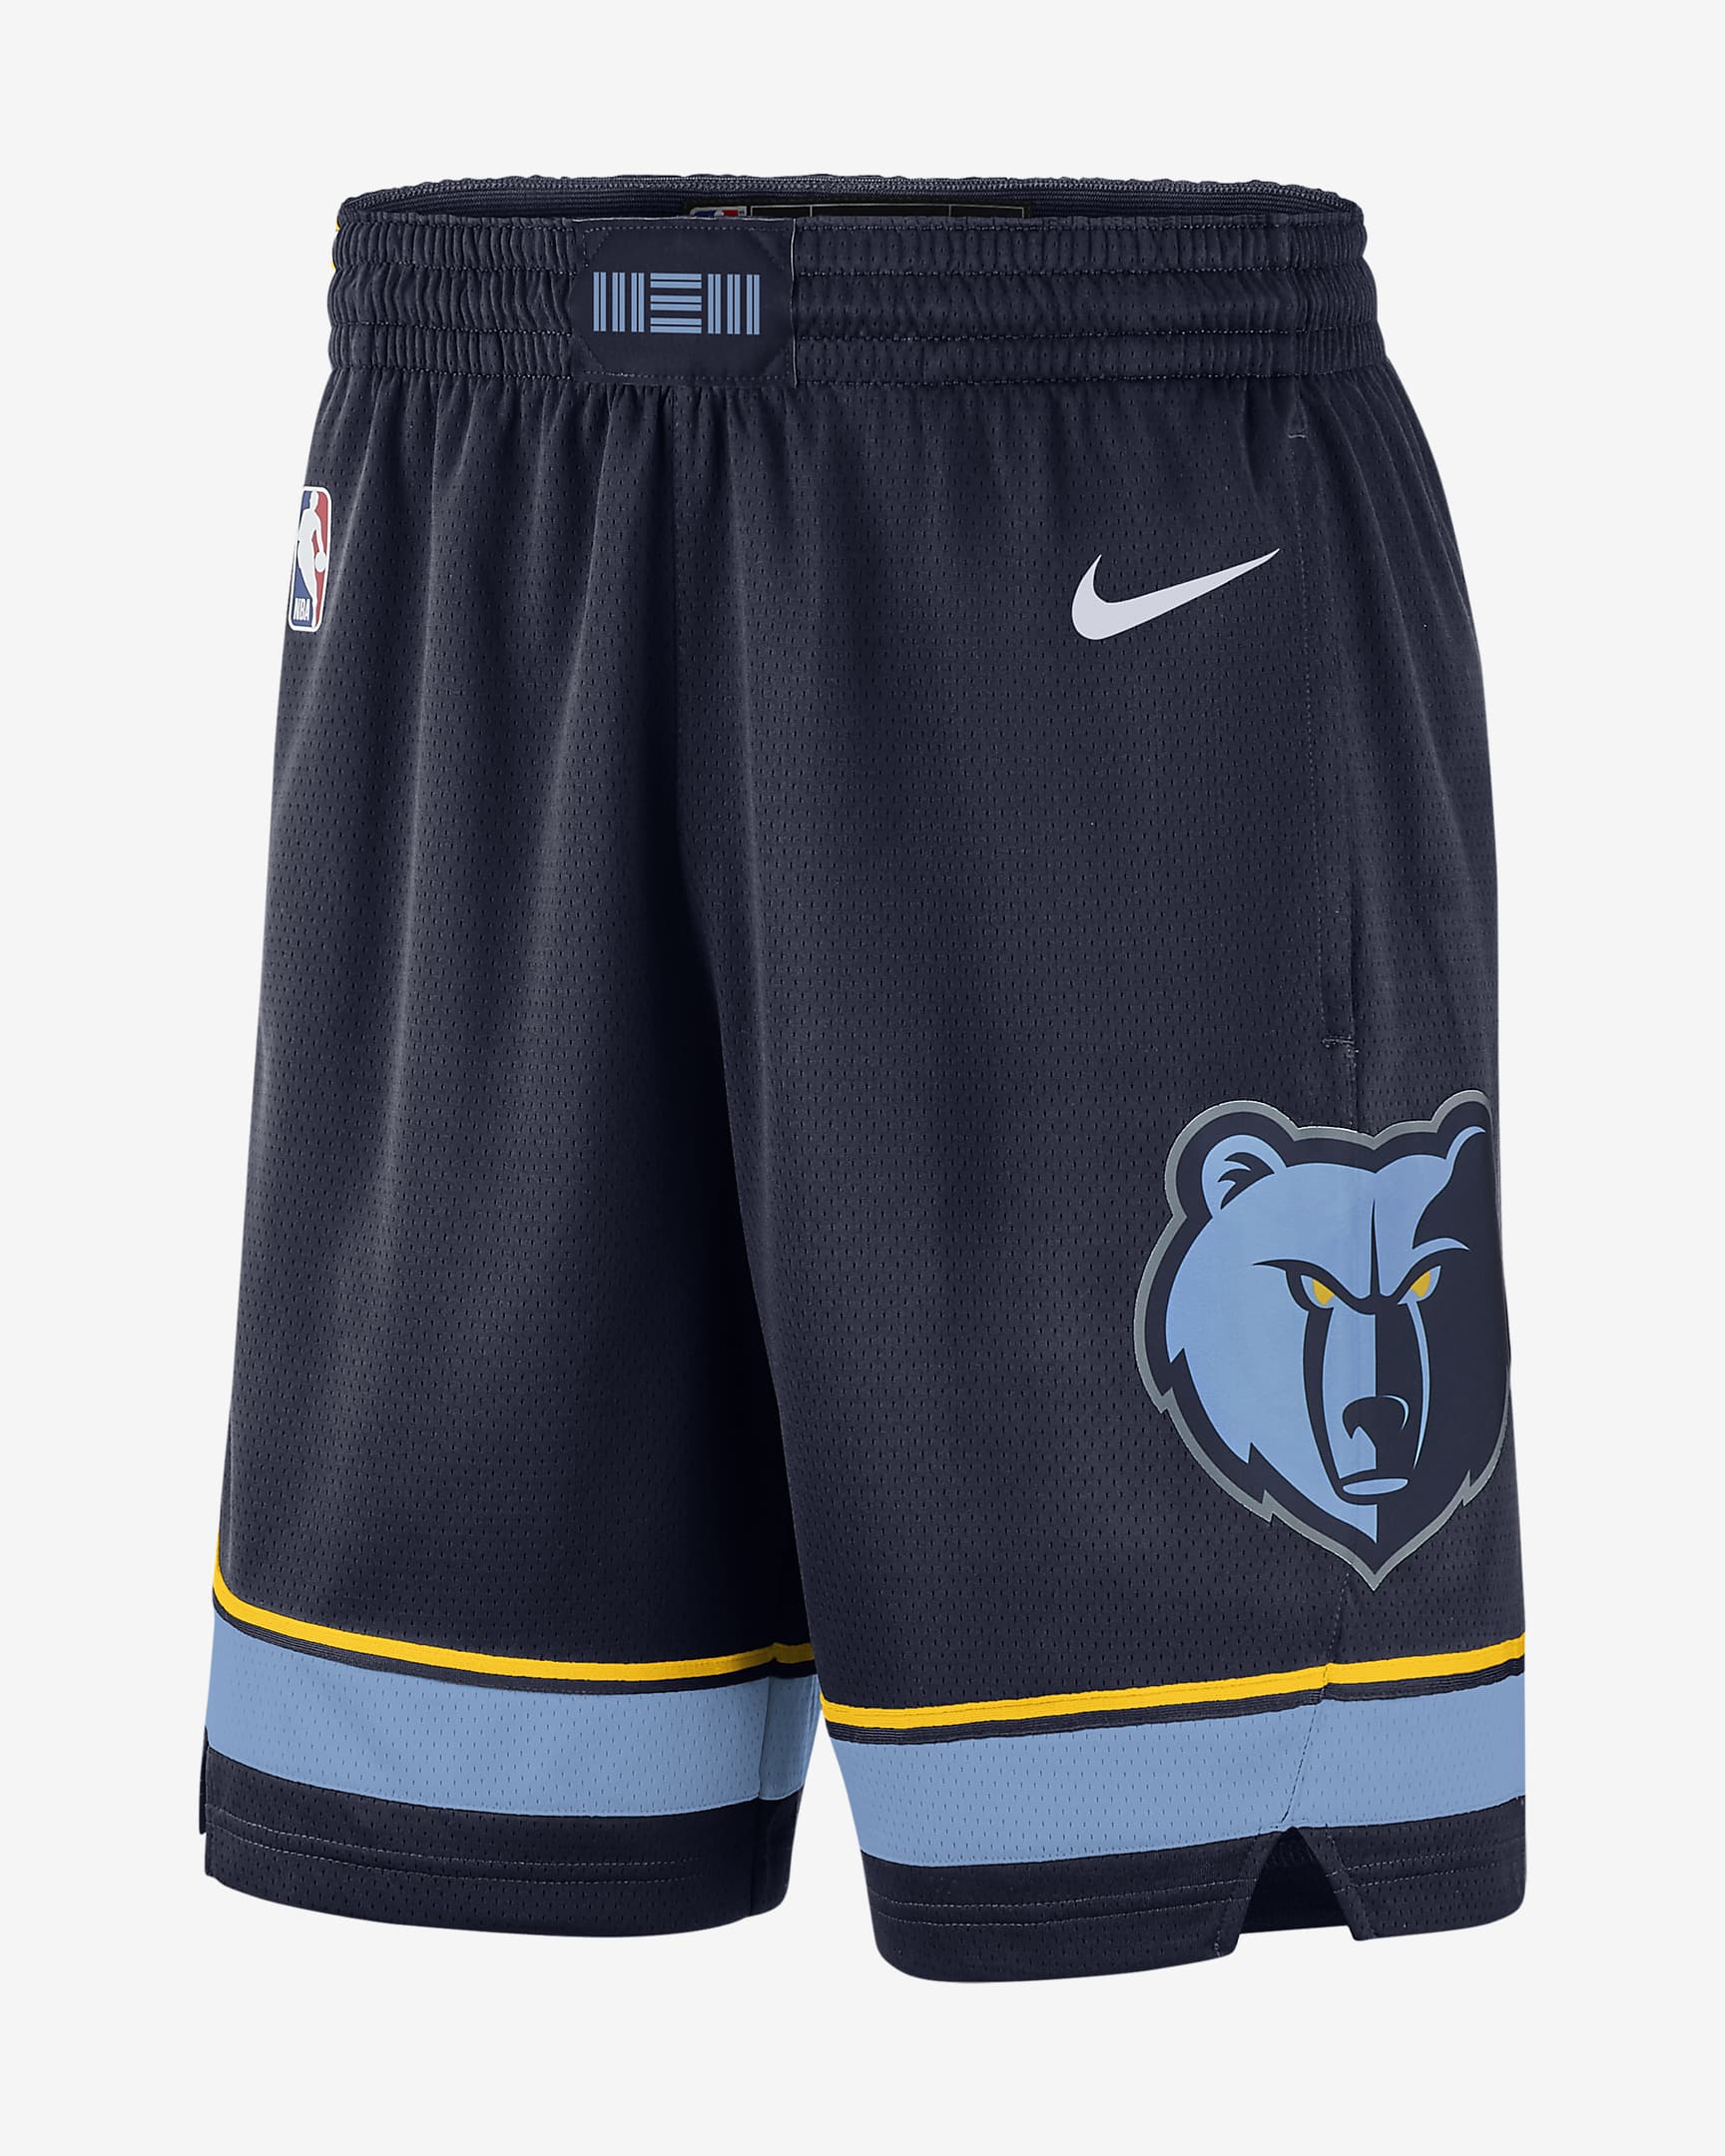 Memphis Grizzlies Icon Edition Men's Nike NBA Swingman Shorts. Nike IL